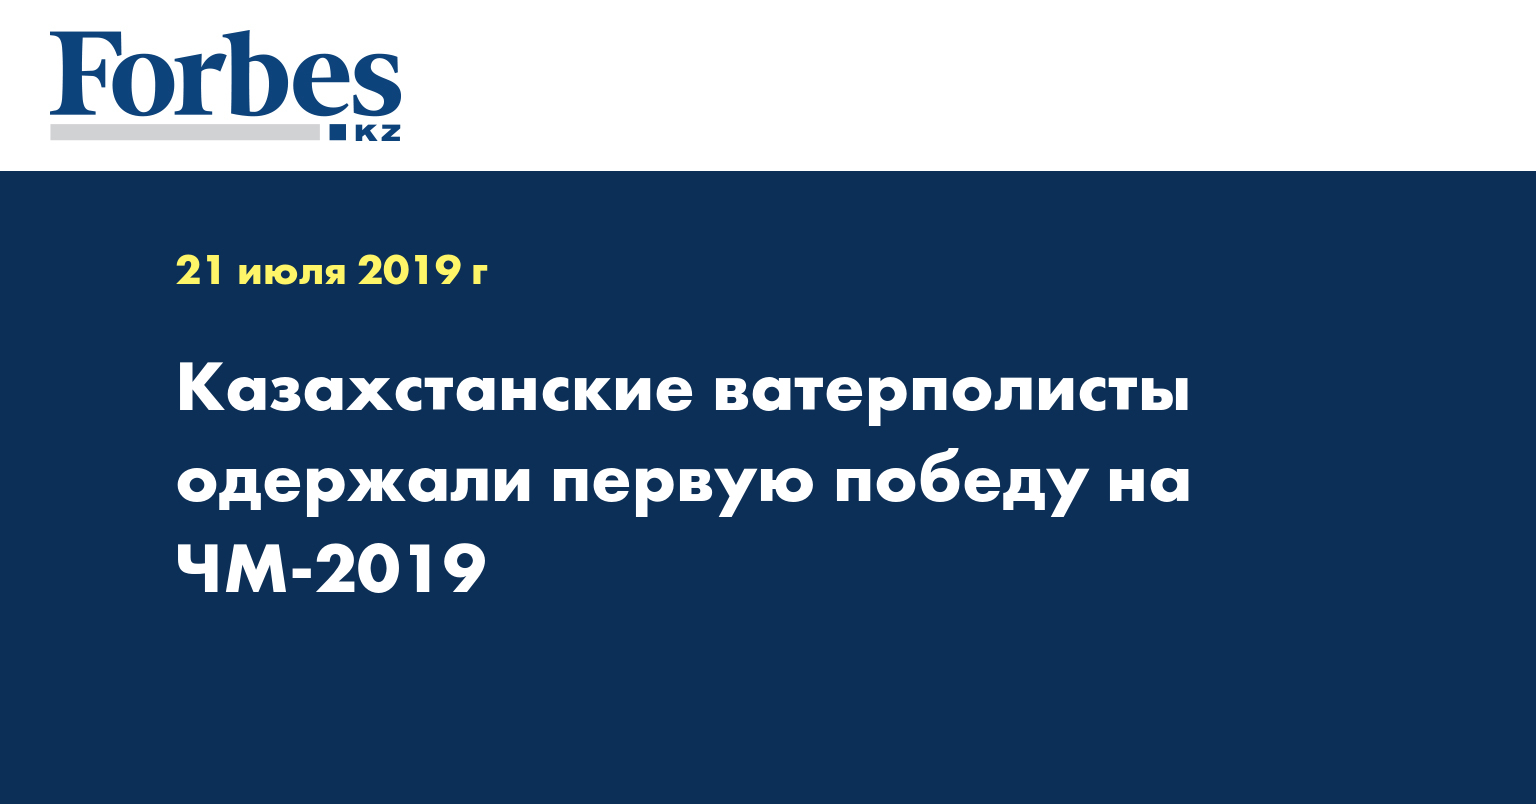 Казахстанские ватерполисты одержали первую победу на ЧМ-2019  